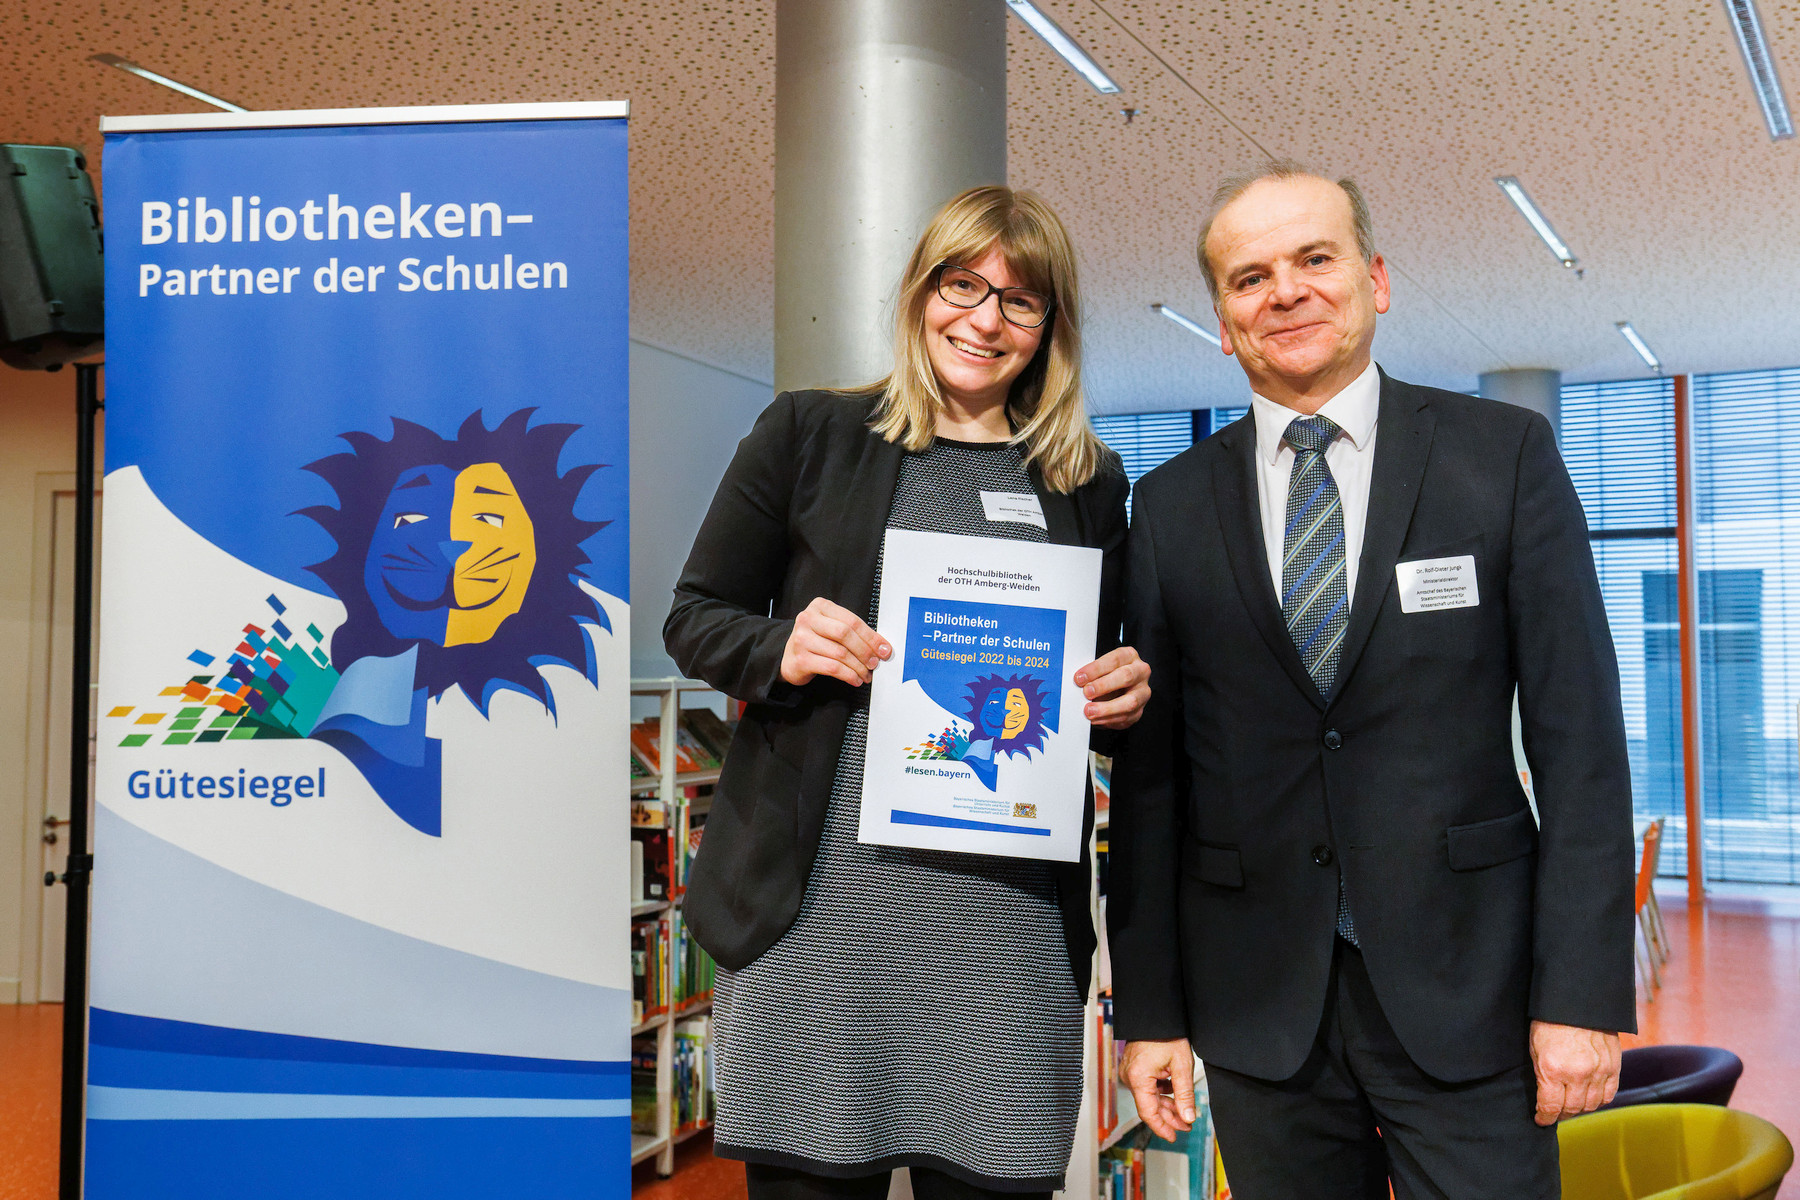 Ausgezeichnet: Bibliothek der OTH Amberg-Weiden erhält erneut Gütesiegel „Bibliotheken – Partner der Schulen“